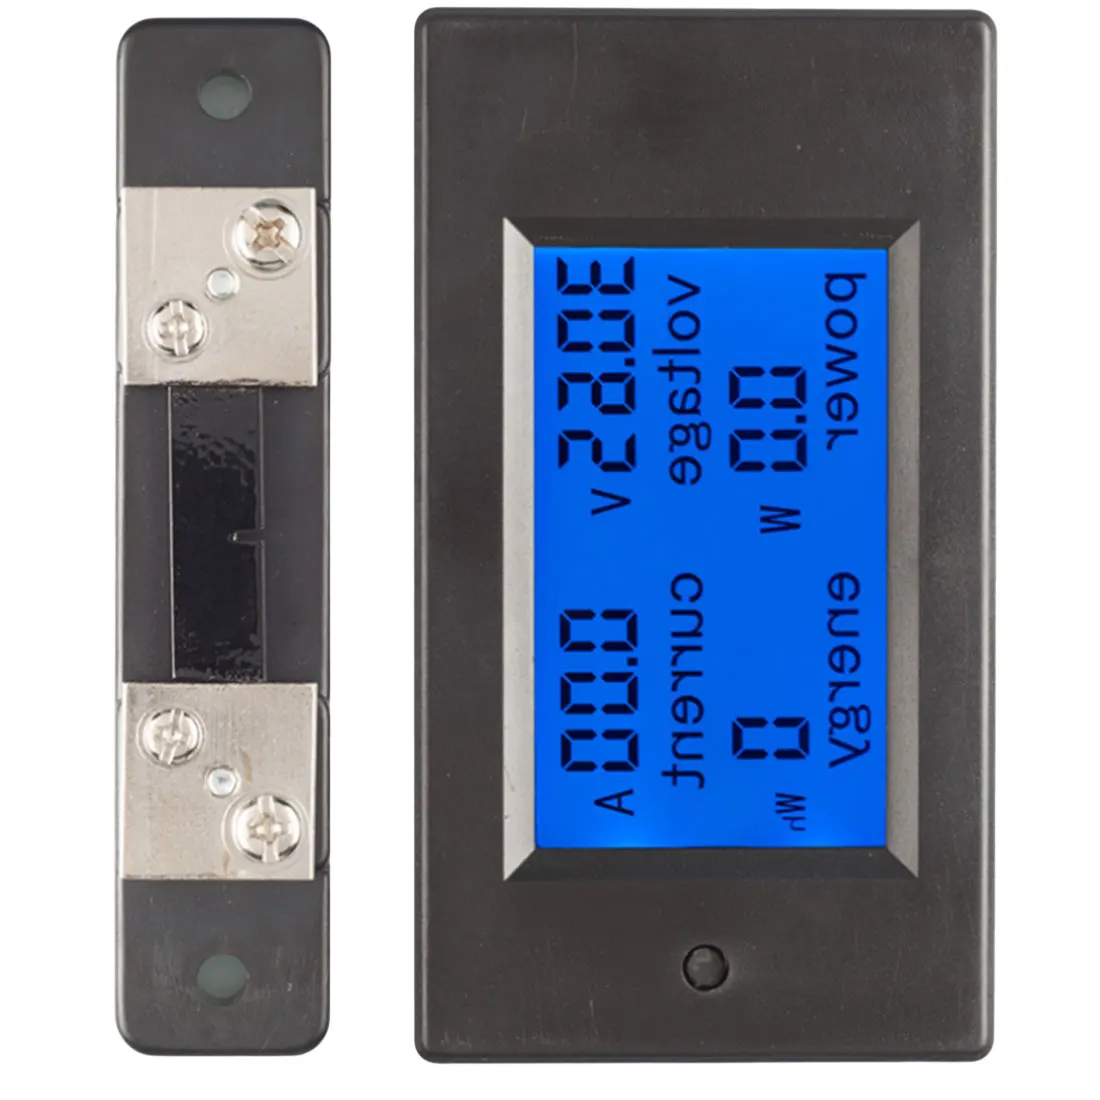 DC LCD Combo Meter KWH Watt Plošči Merilnik Digitalni Prikaz Napetost, Trenutna Moč Poraba Električne Energije Merilnik Baterije Tester 4